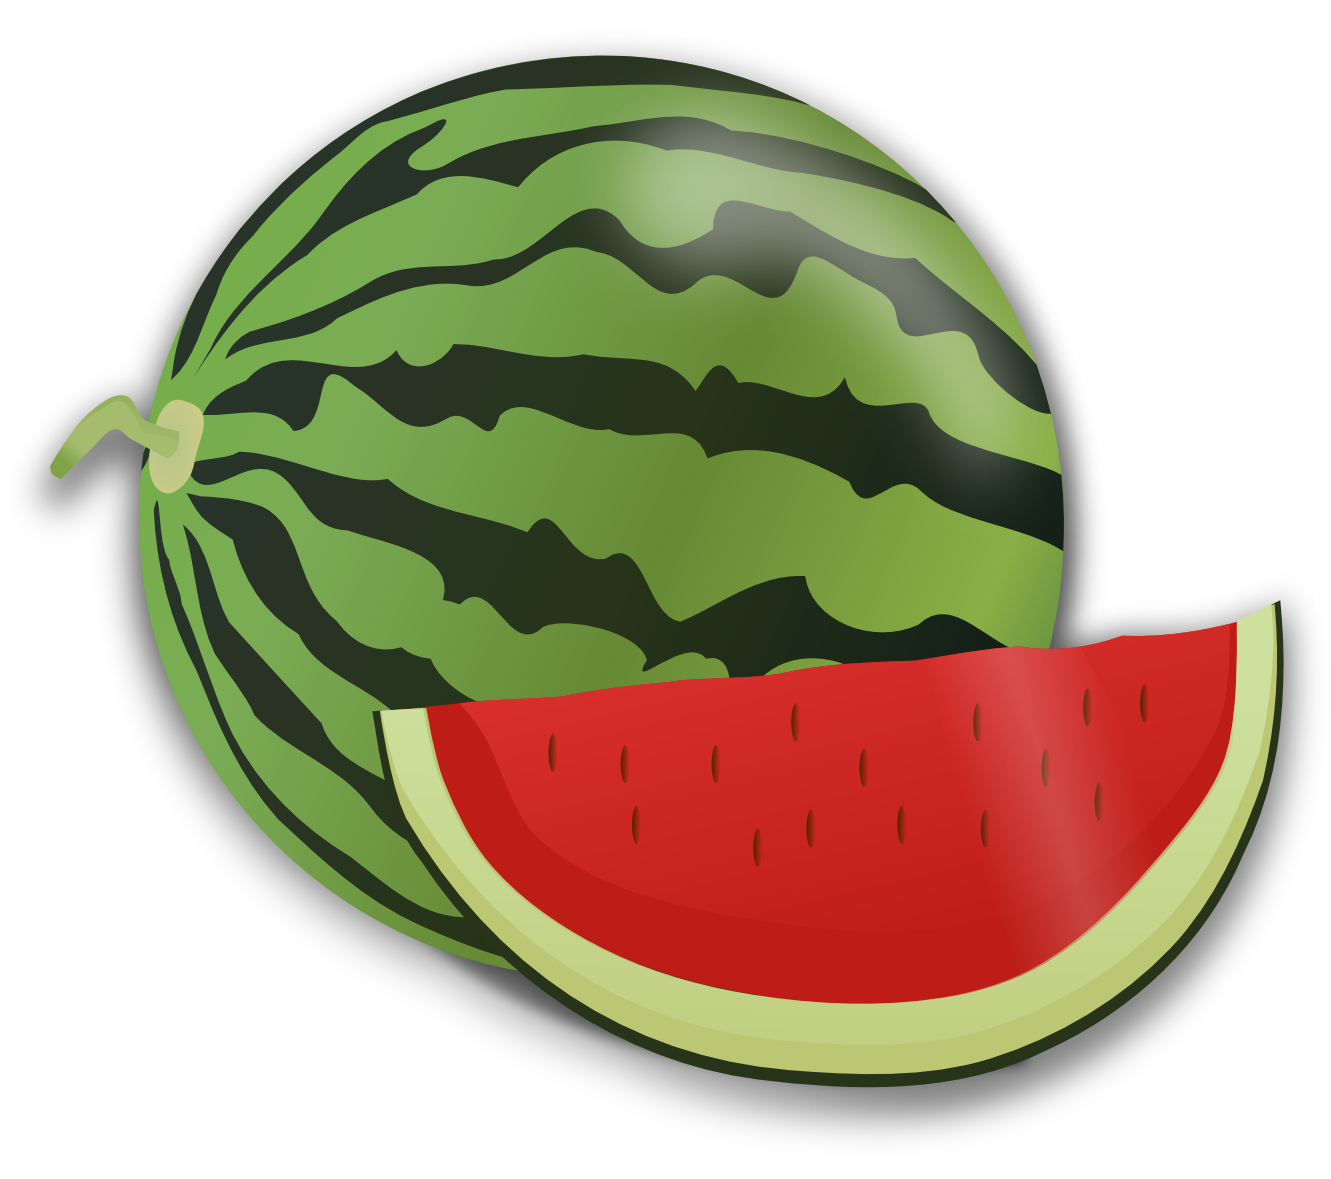 Watermelon clipart tembikai. Slice cliparts cliparting com